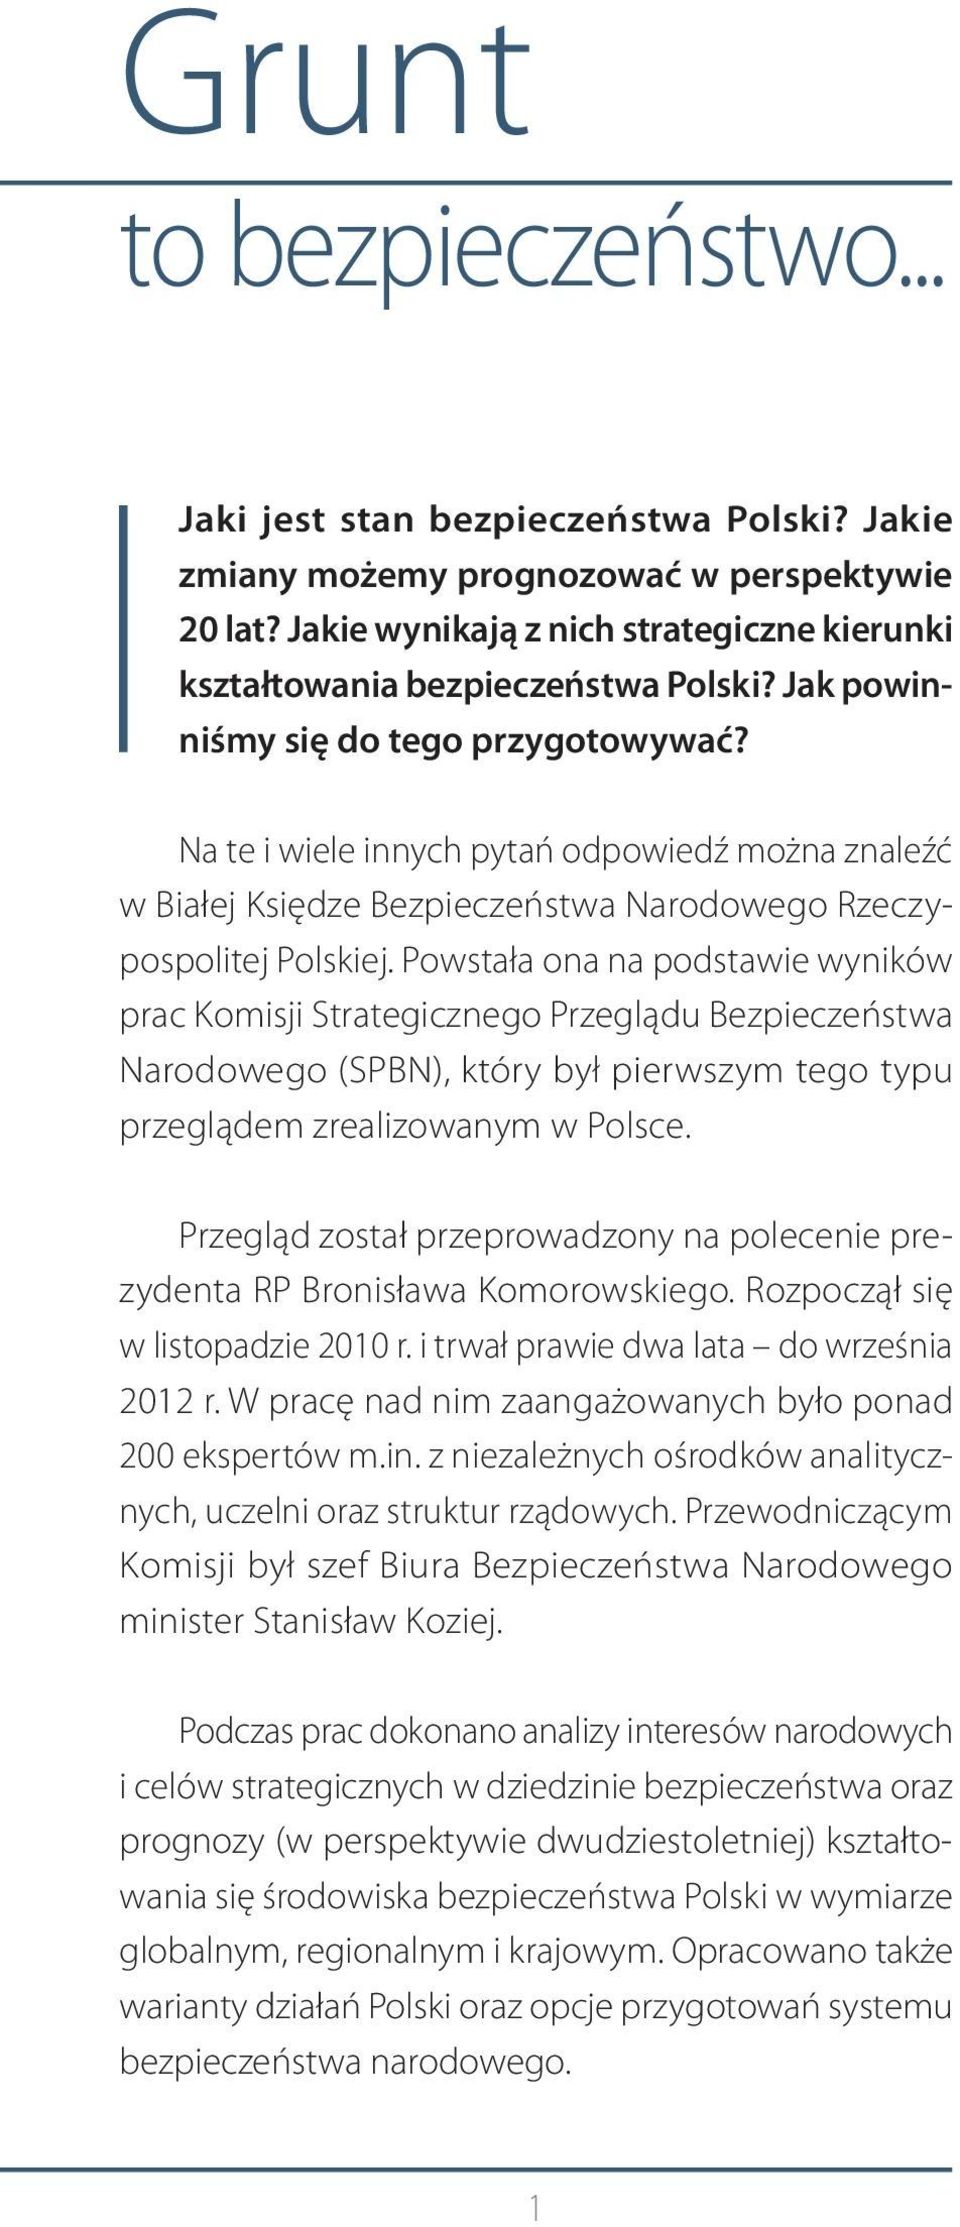 Powstała ona na podstawie wyników prac Komisji Strategicznego Przeglądu Bezpieczeństwa Narodowego (SPBN), który był pierwszym tego typu przeglądem zrealizowanym w Polsce.